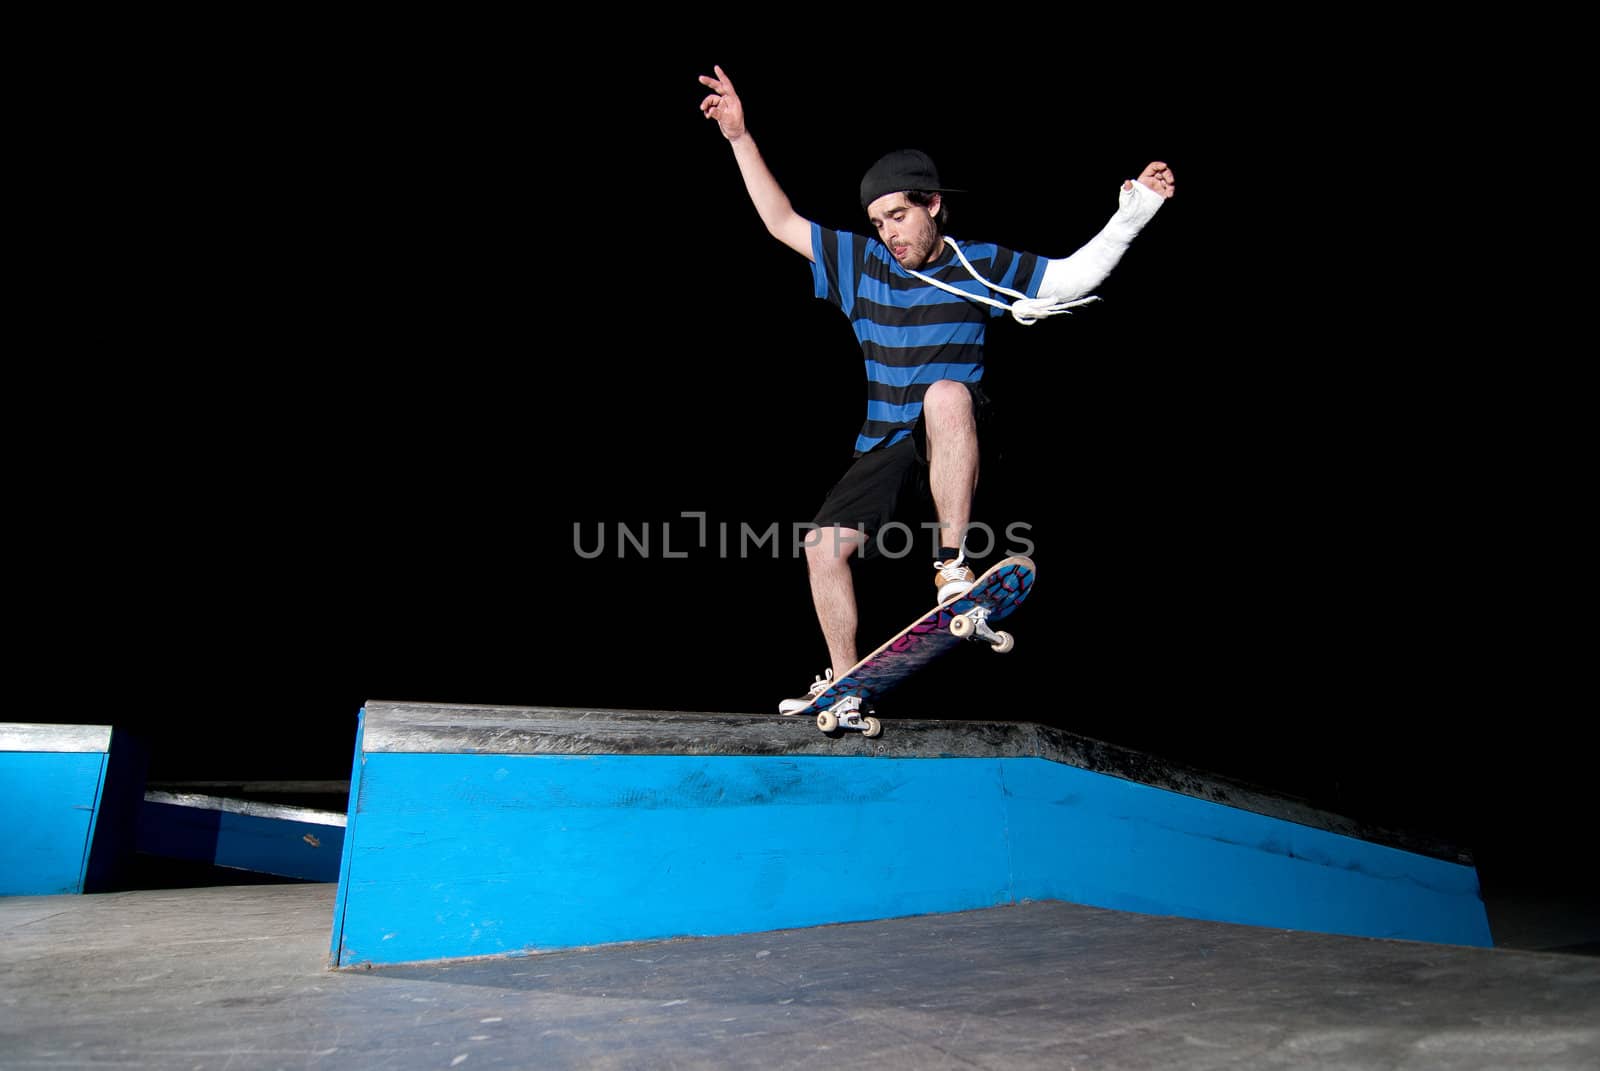 Skateboarder on a slide by homydesign